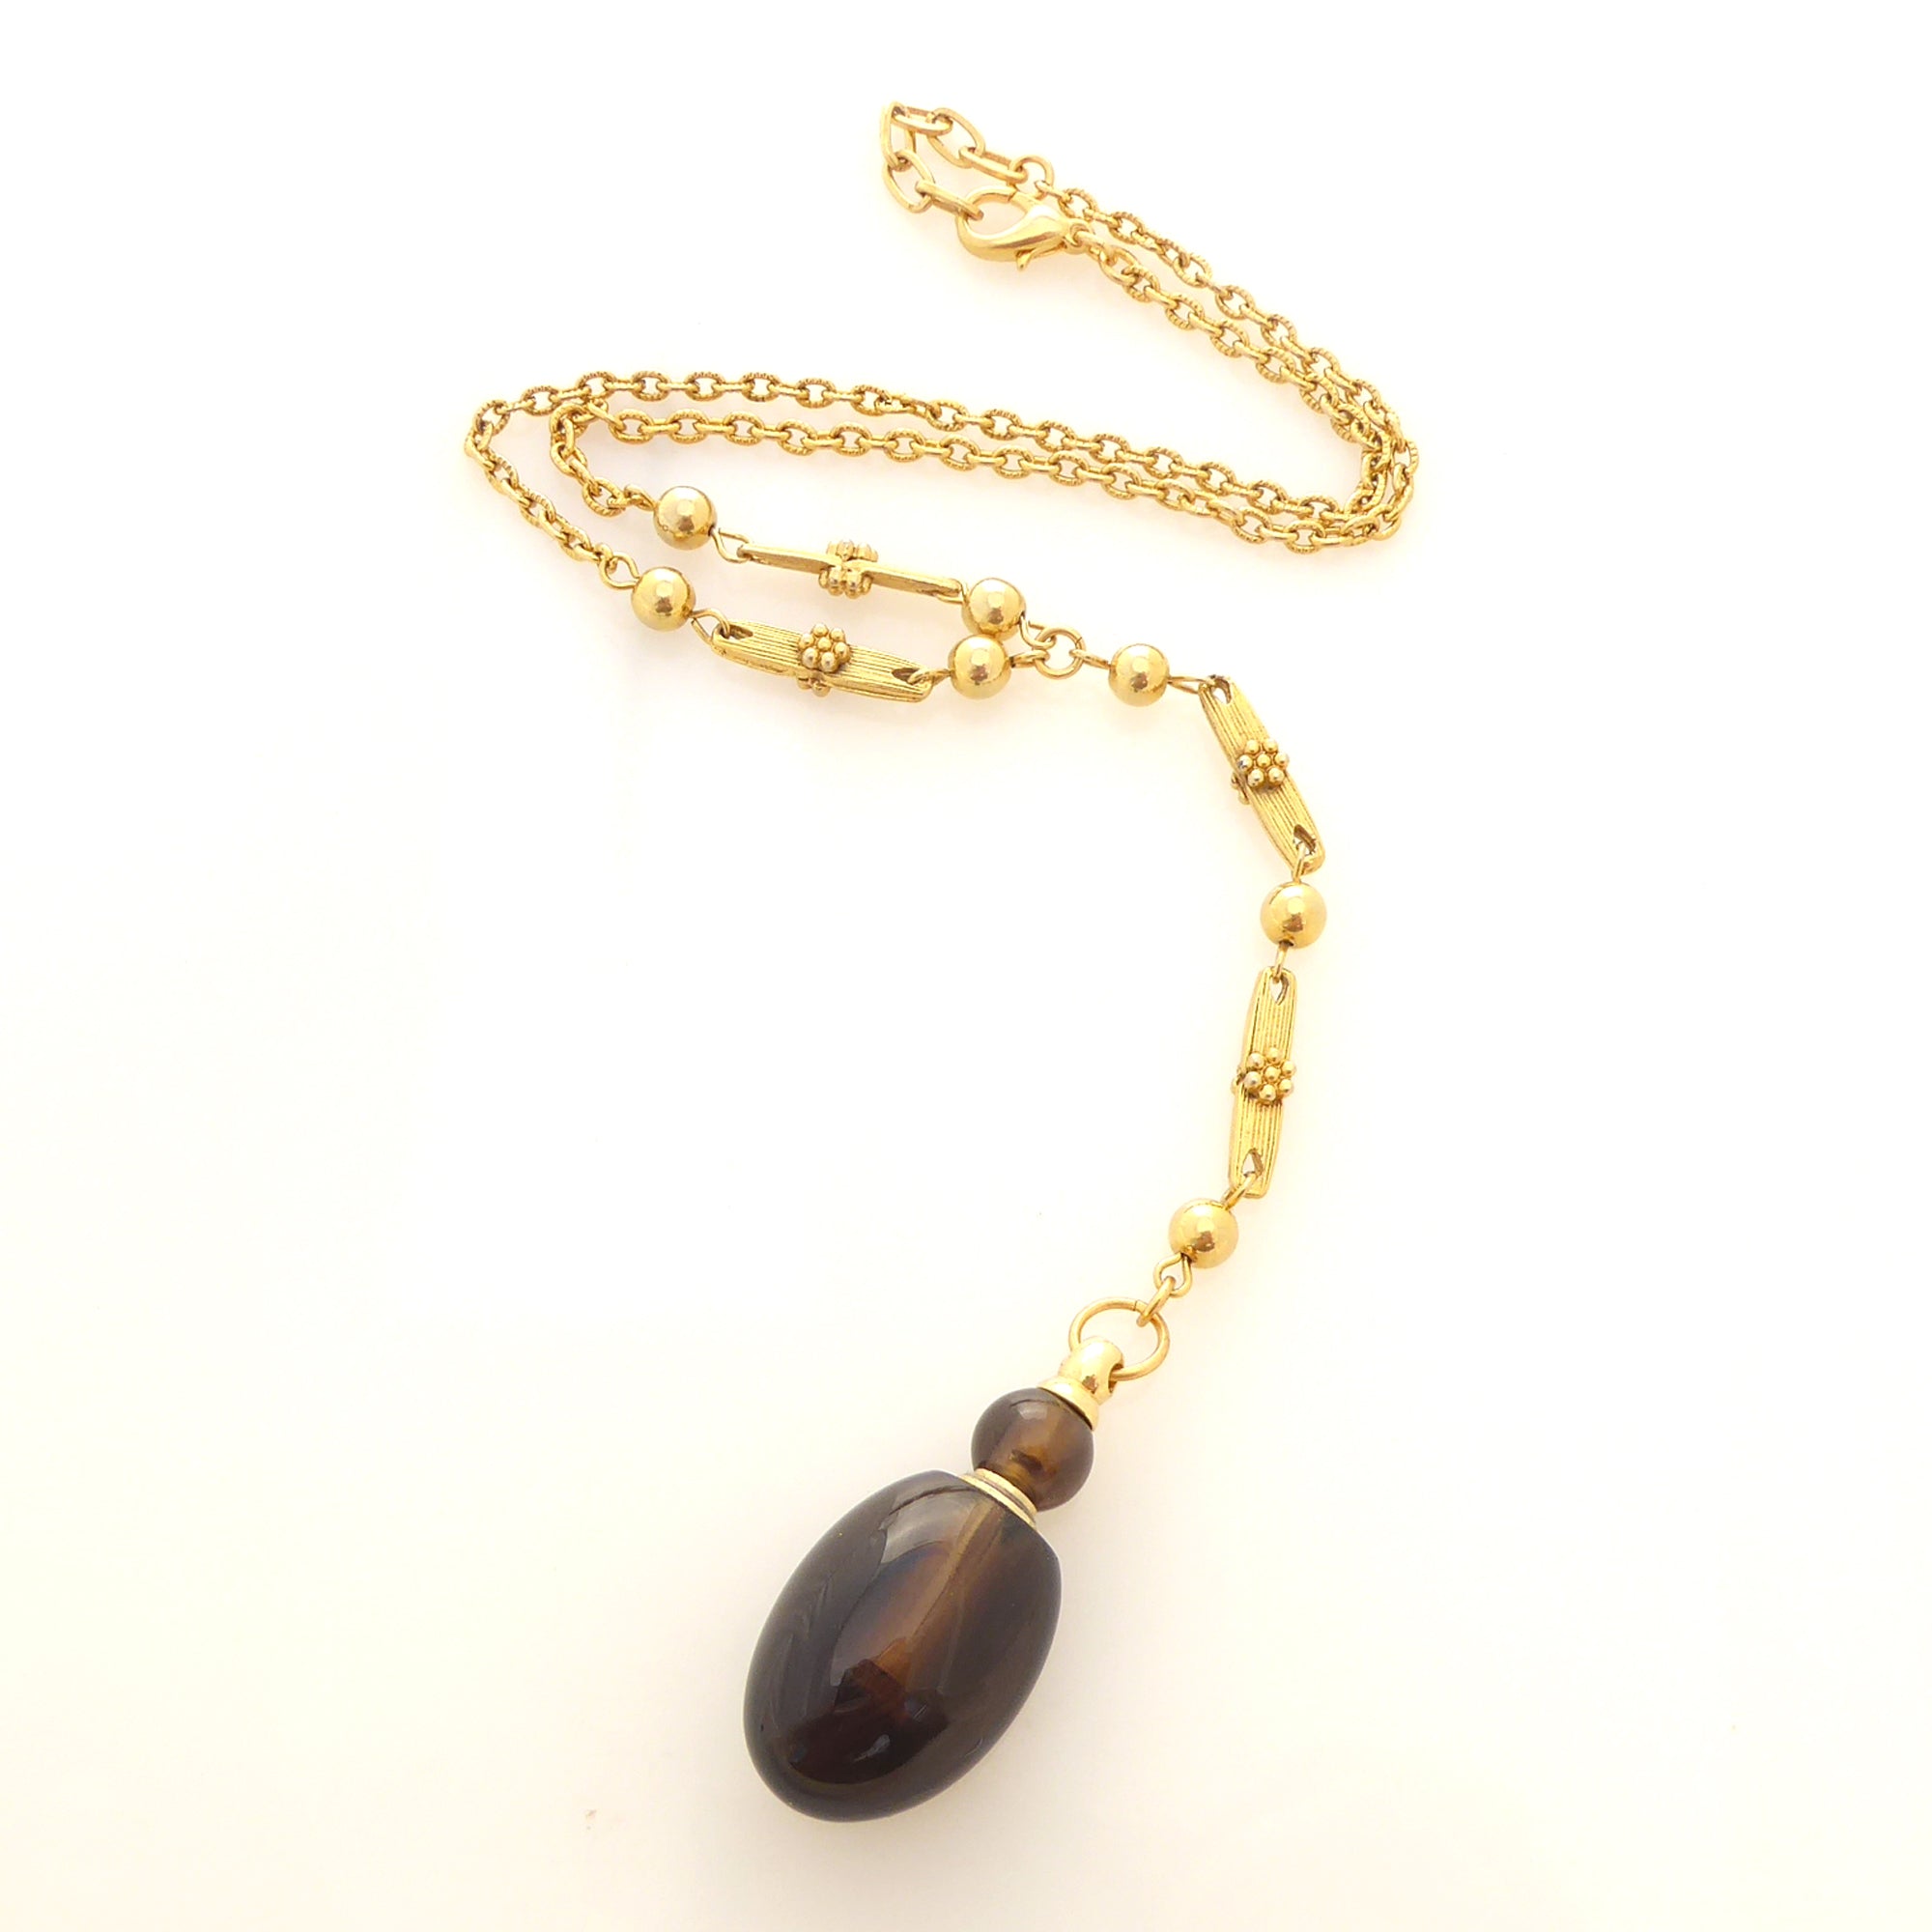 Smoky quartz vial necklace